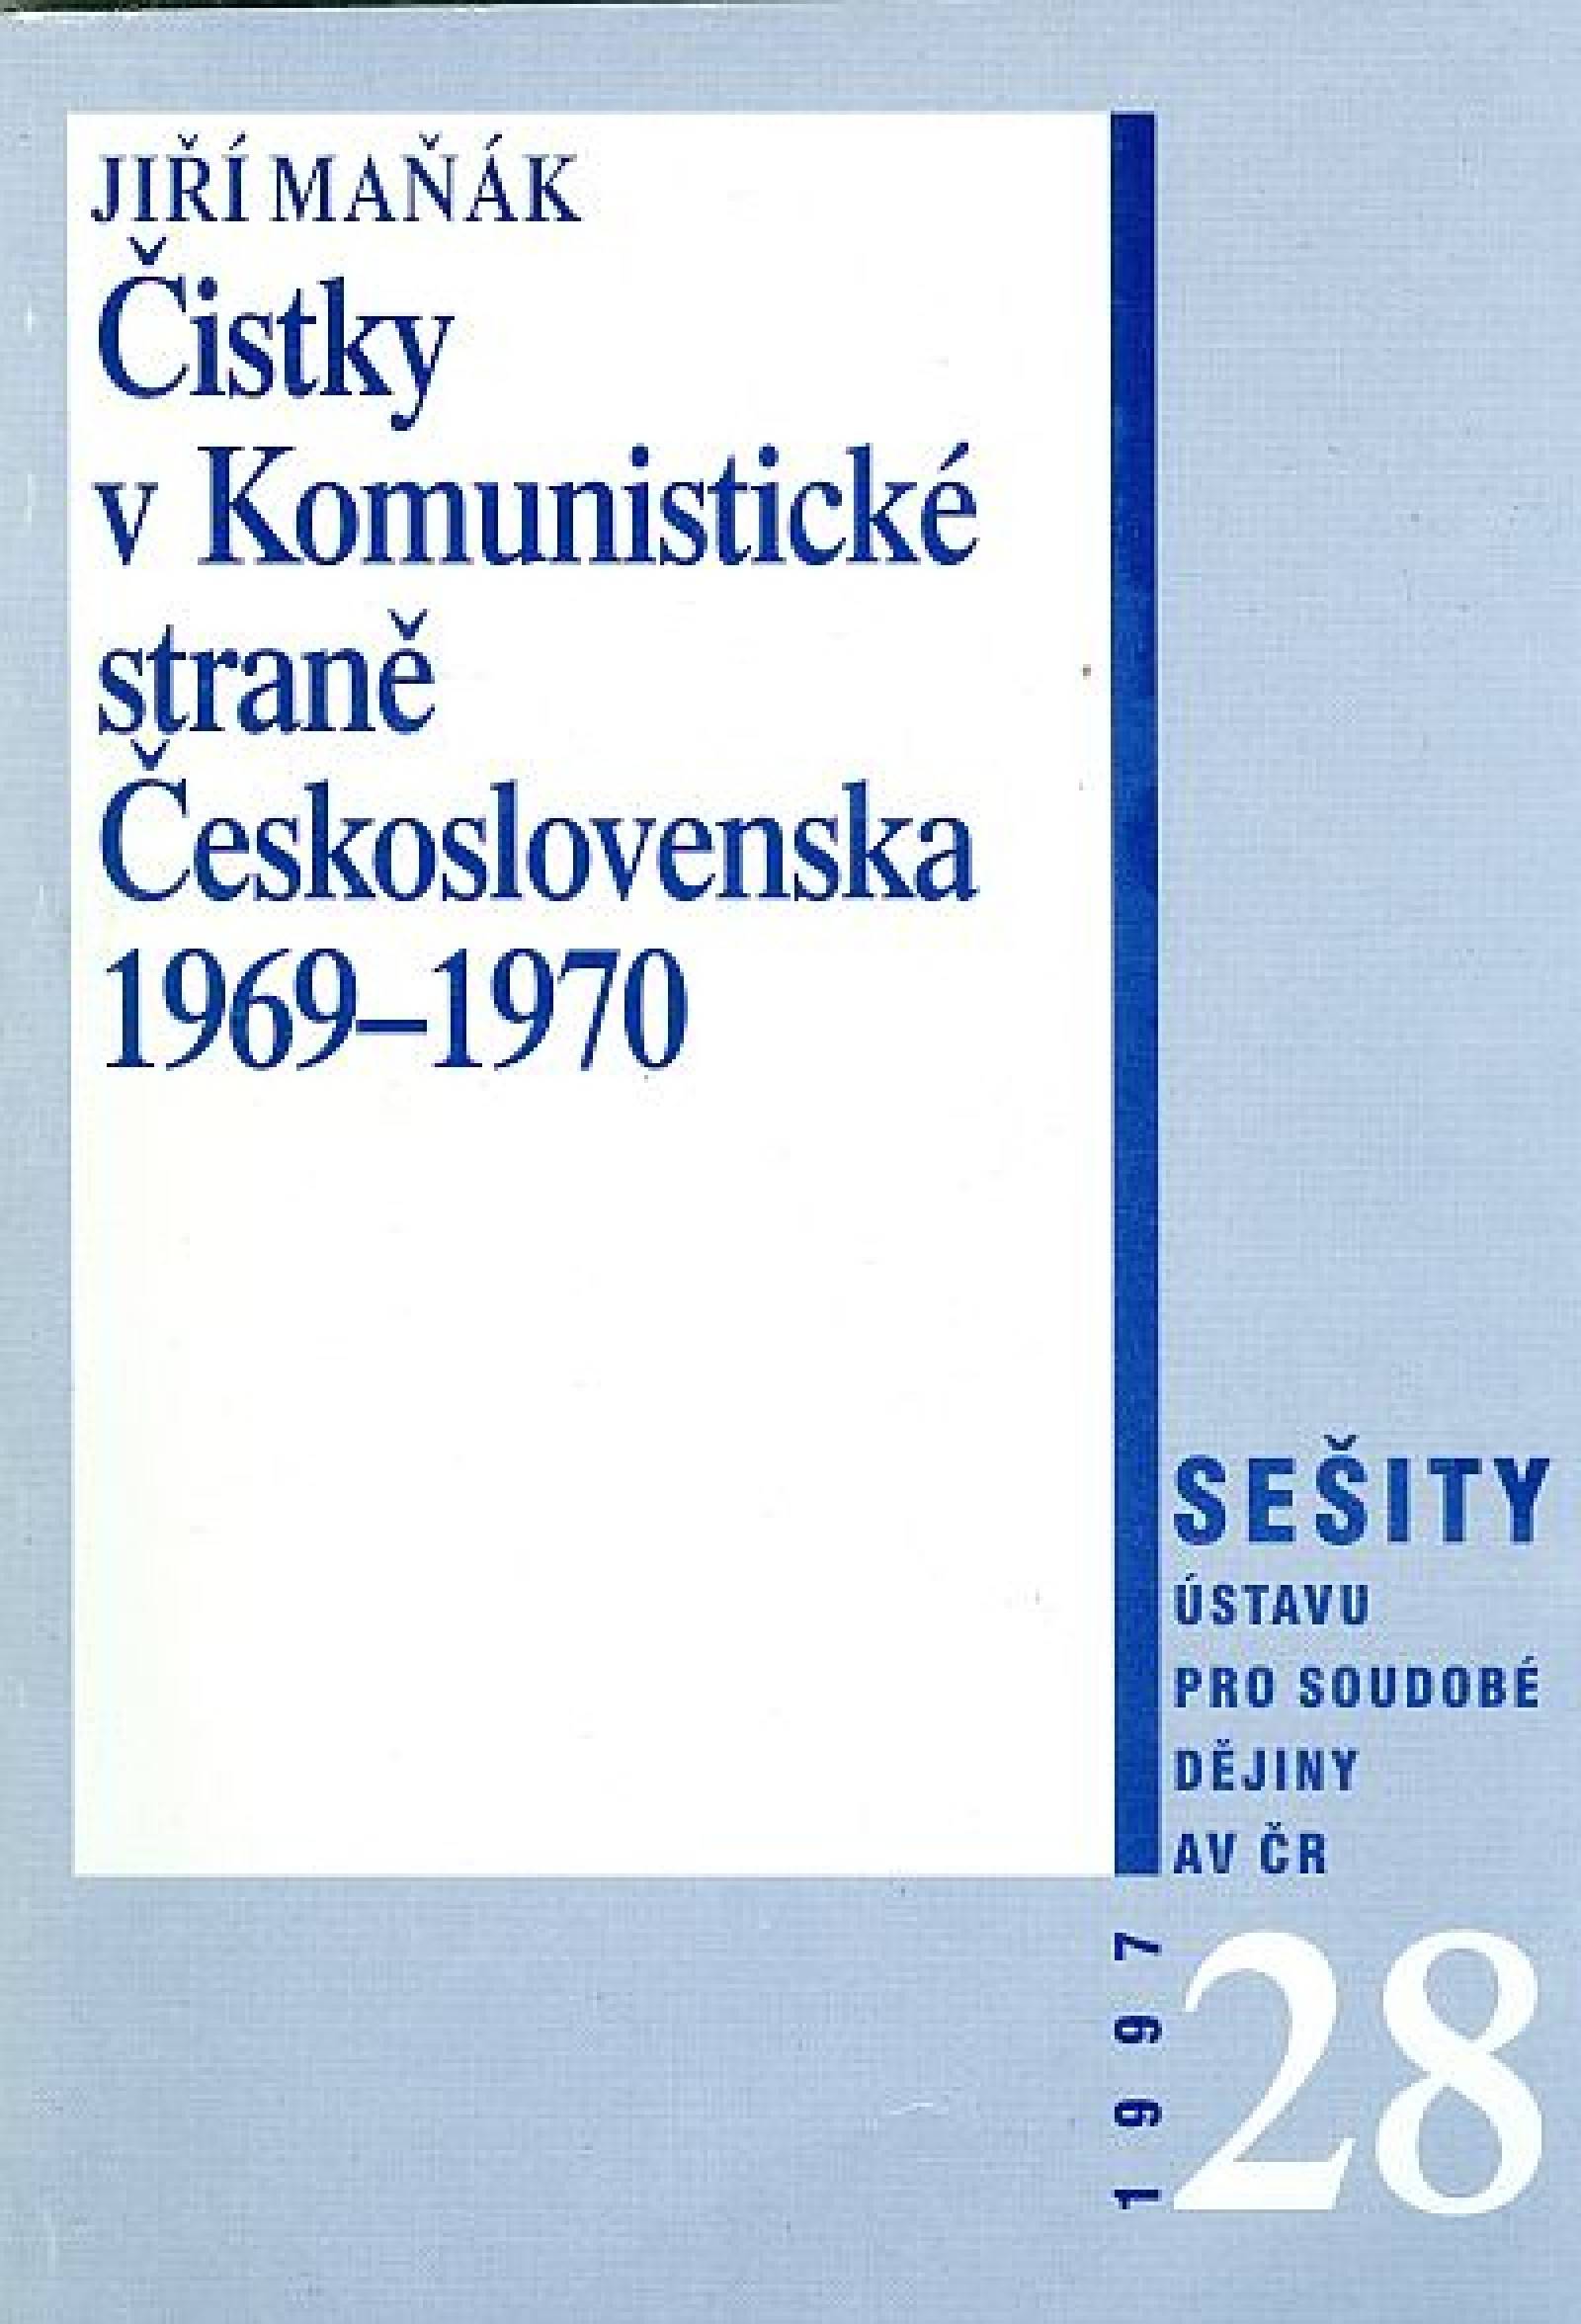 Čistky v Komunistické straně Československa  v letech 1969–1970